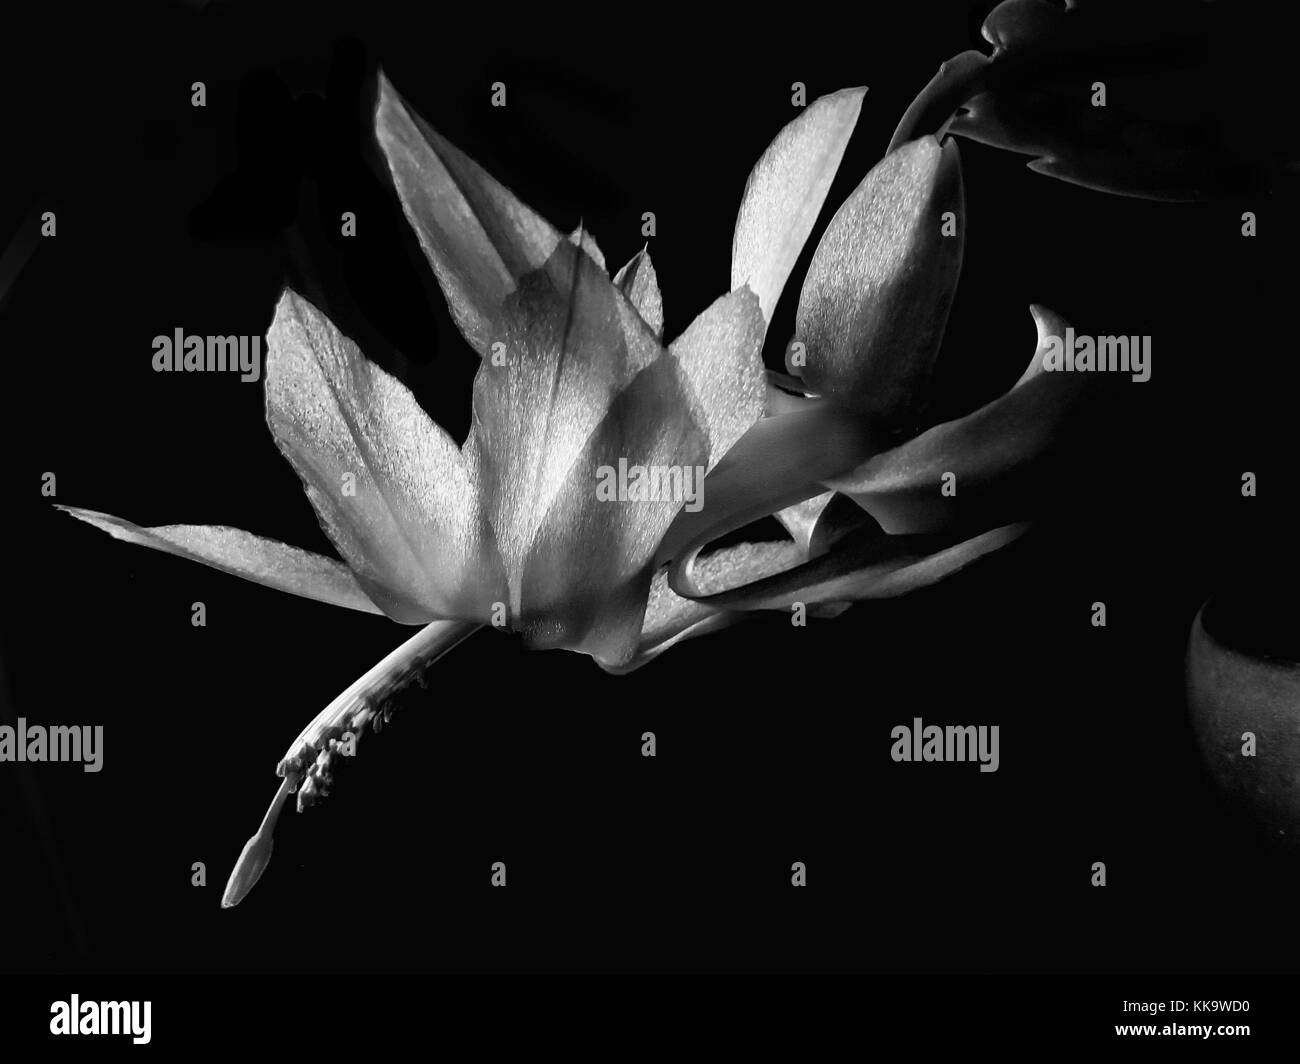 Imagen en blanco y negro de la flor del cactus llamado ephipytic Schlumbergera sobre fondo negro. También es conocido como Navidad o Thanksgiving cactus. Foto de stock